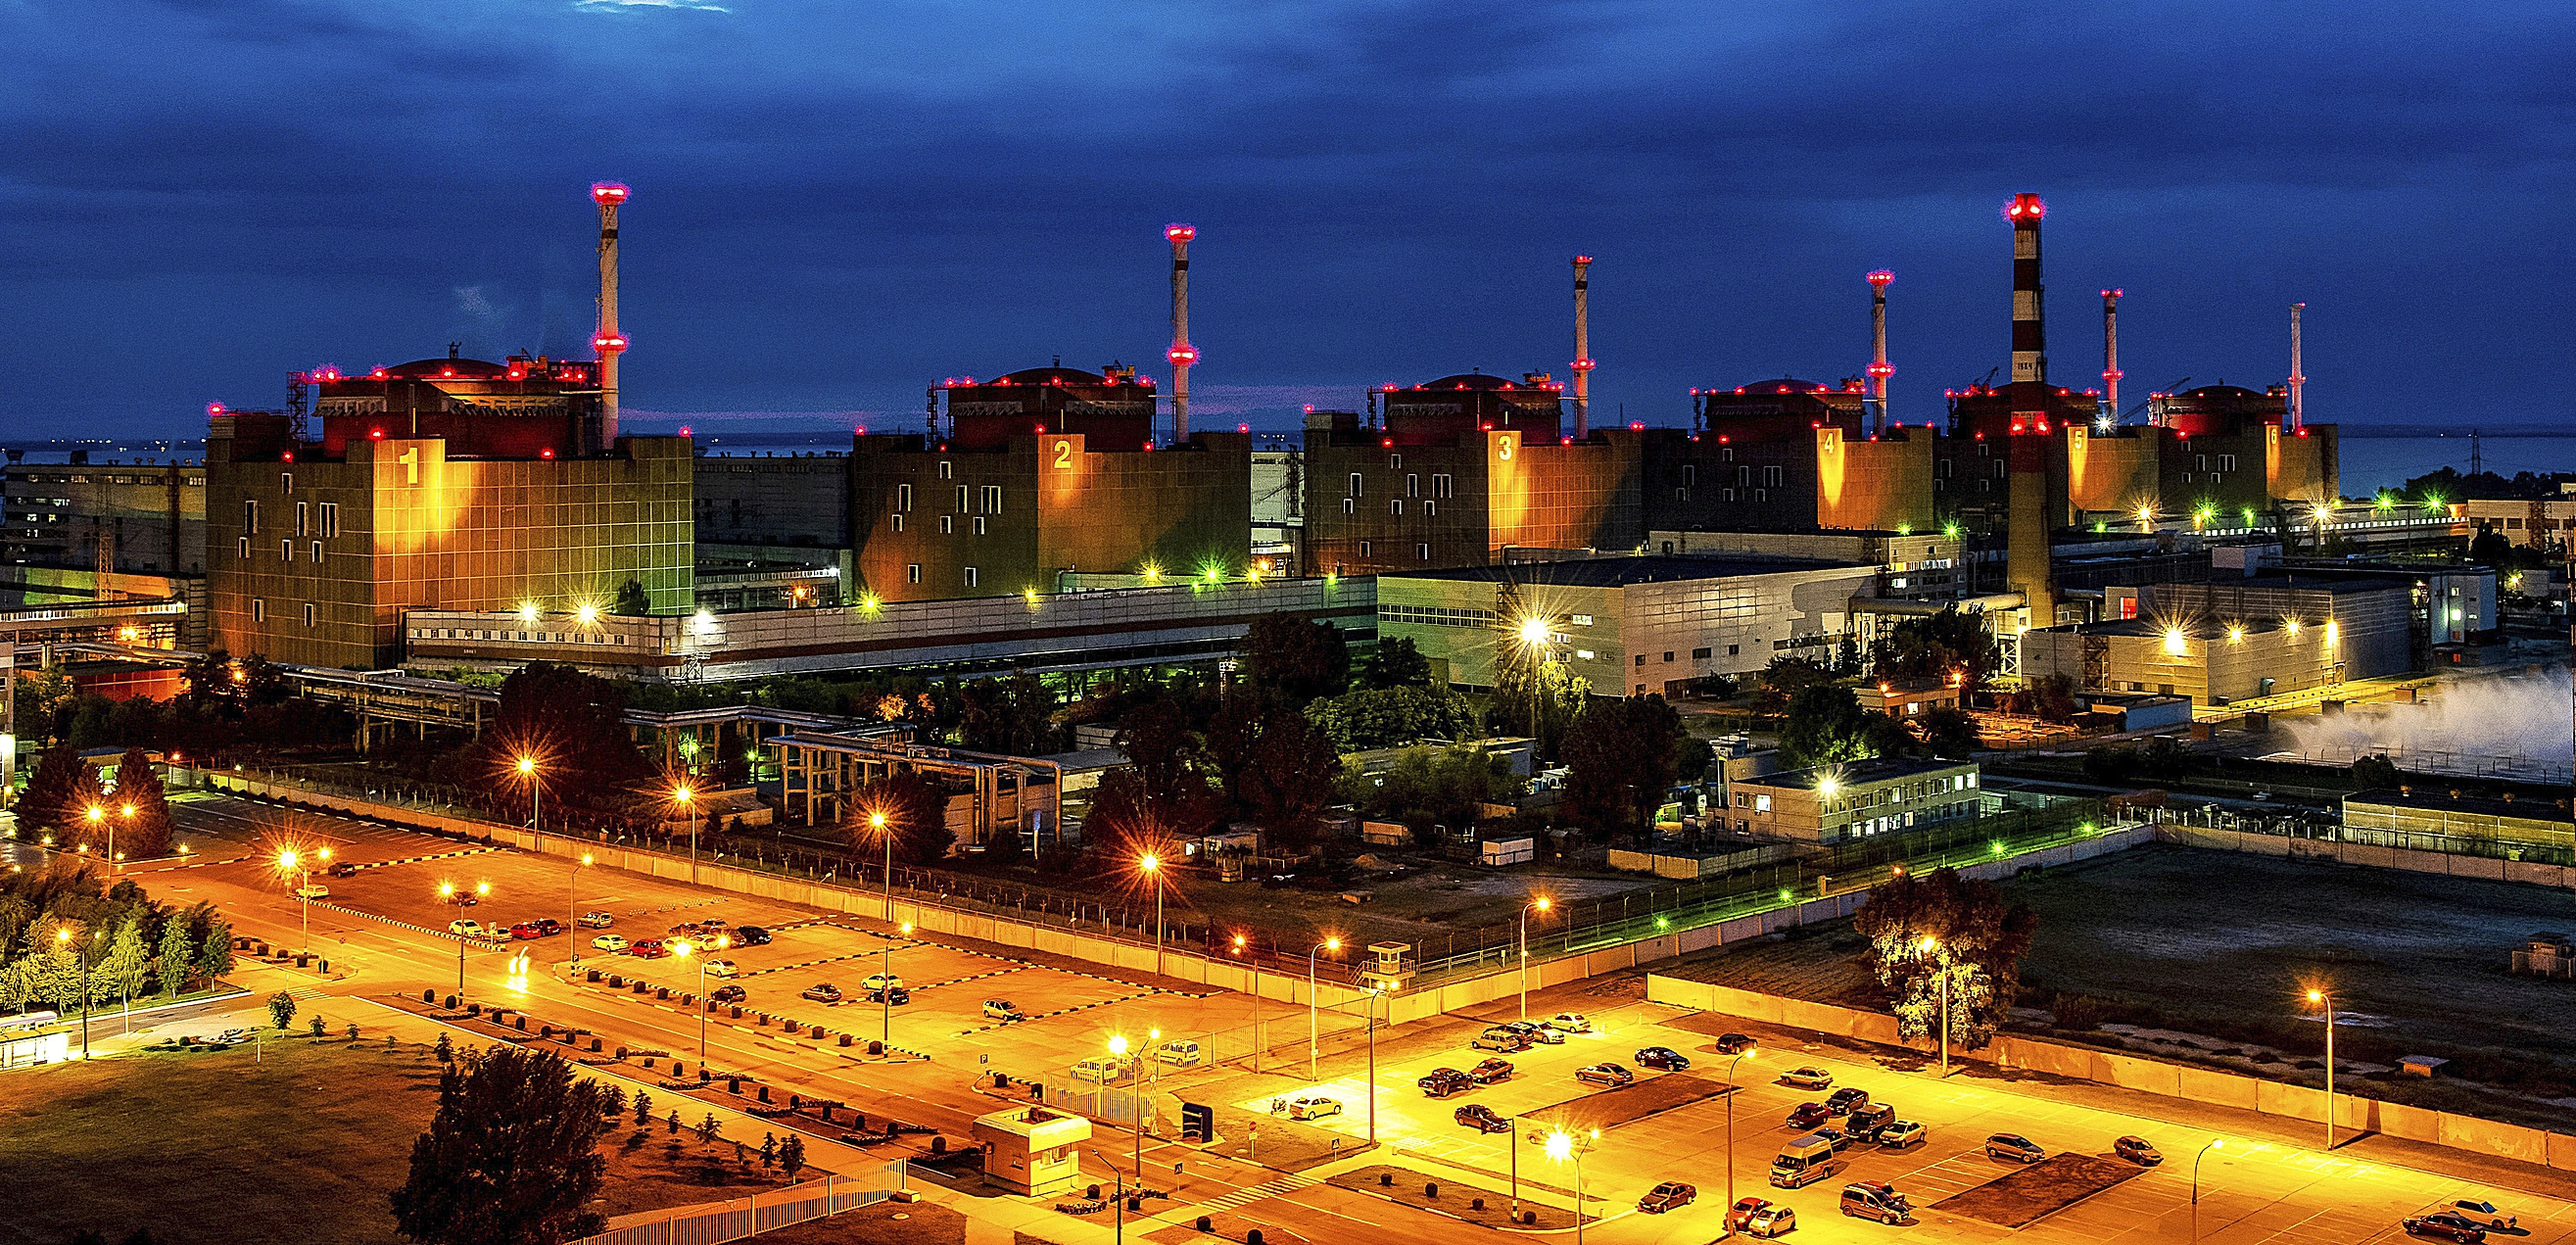 Las unidades generadoras y las instalaciones de la central nuclear de Zaporizhzhia se iluminan por la noche, Enerhodar, región de Zaporizhzhia, sureste de Ucrania